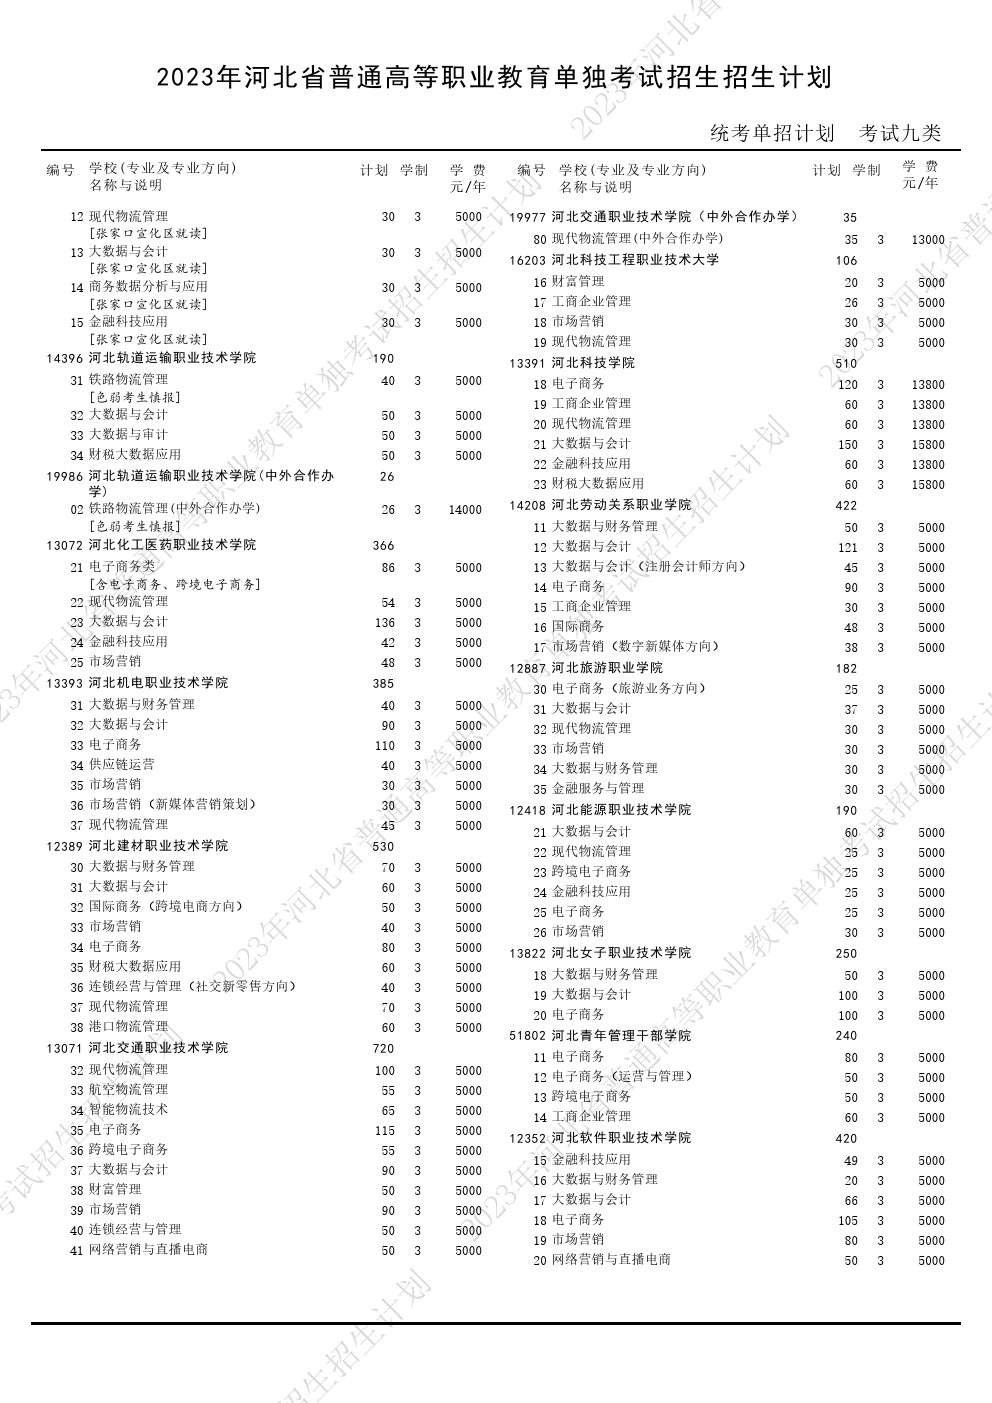 2023年河北省高职单招考试九类招生计划